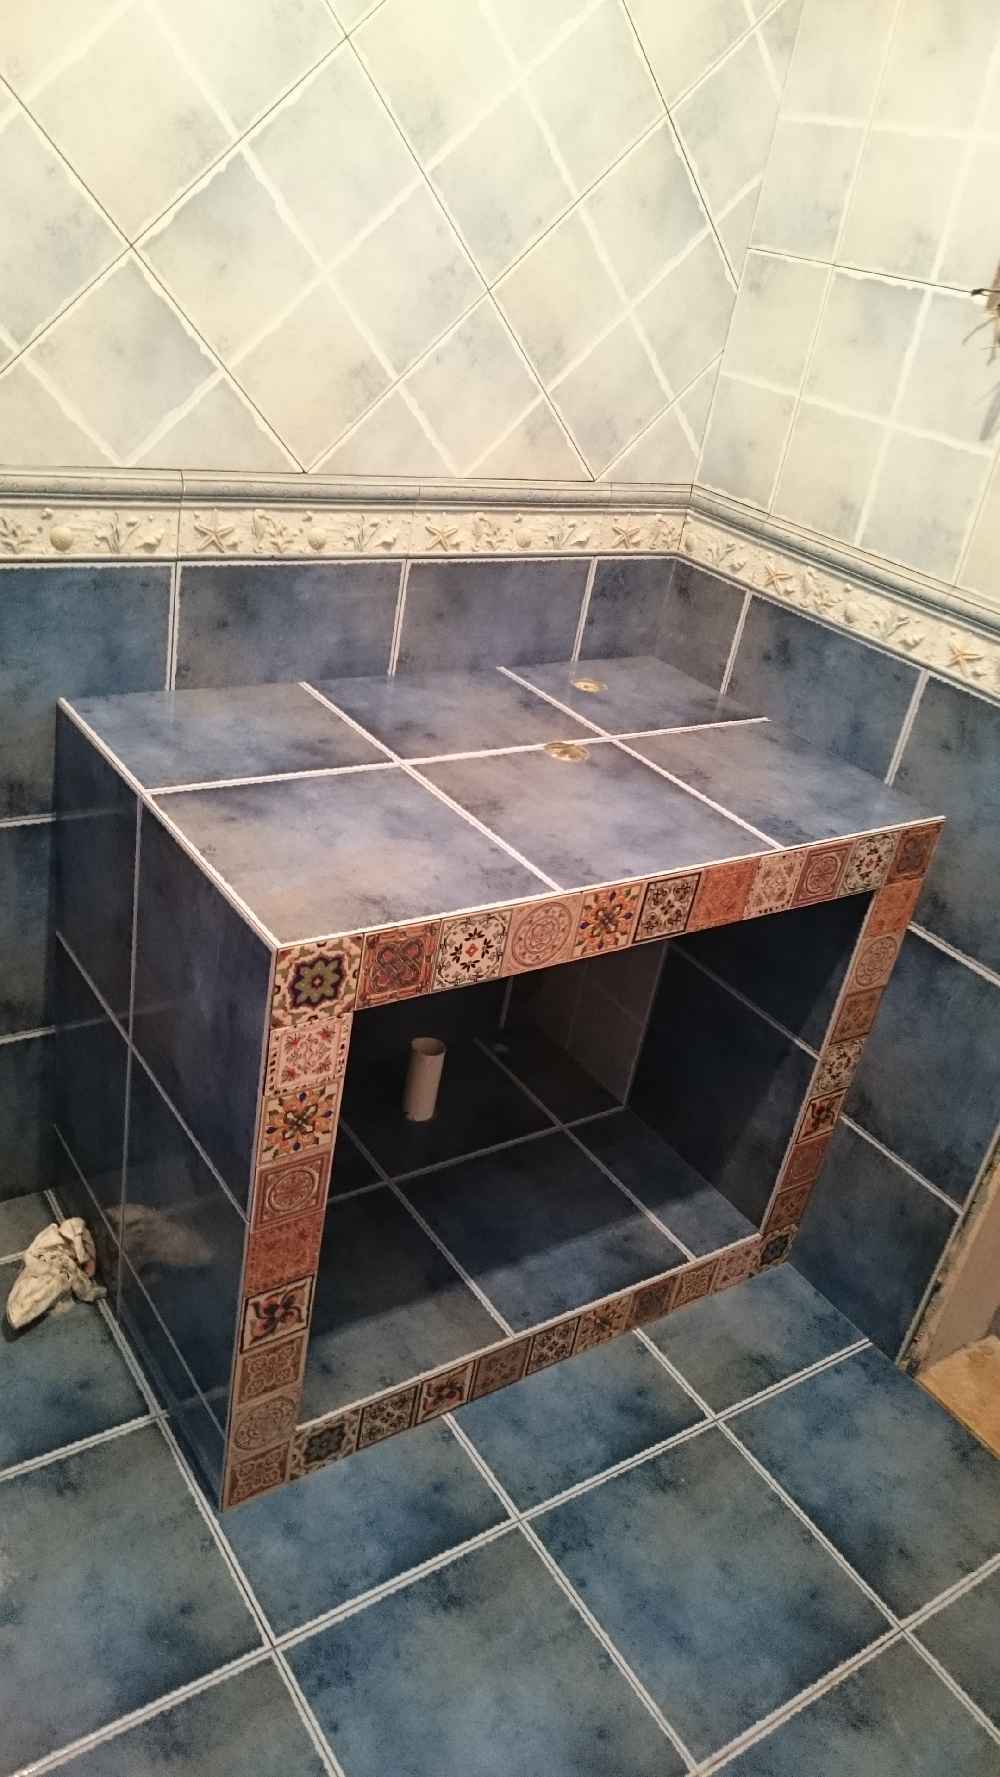 浴室淋浴区砖砌地台图片